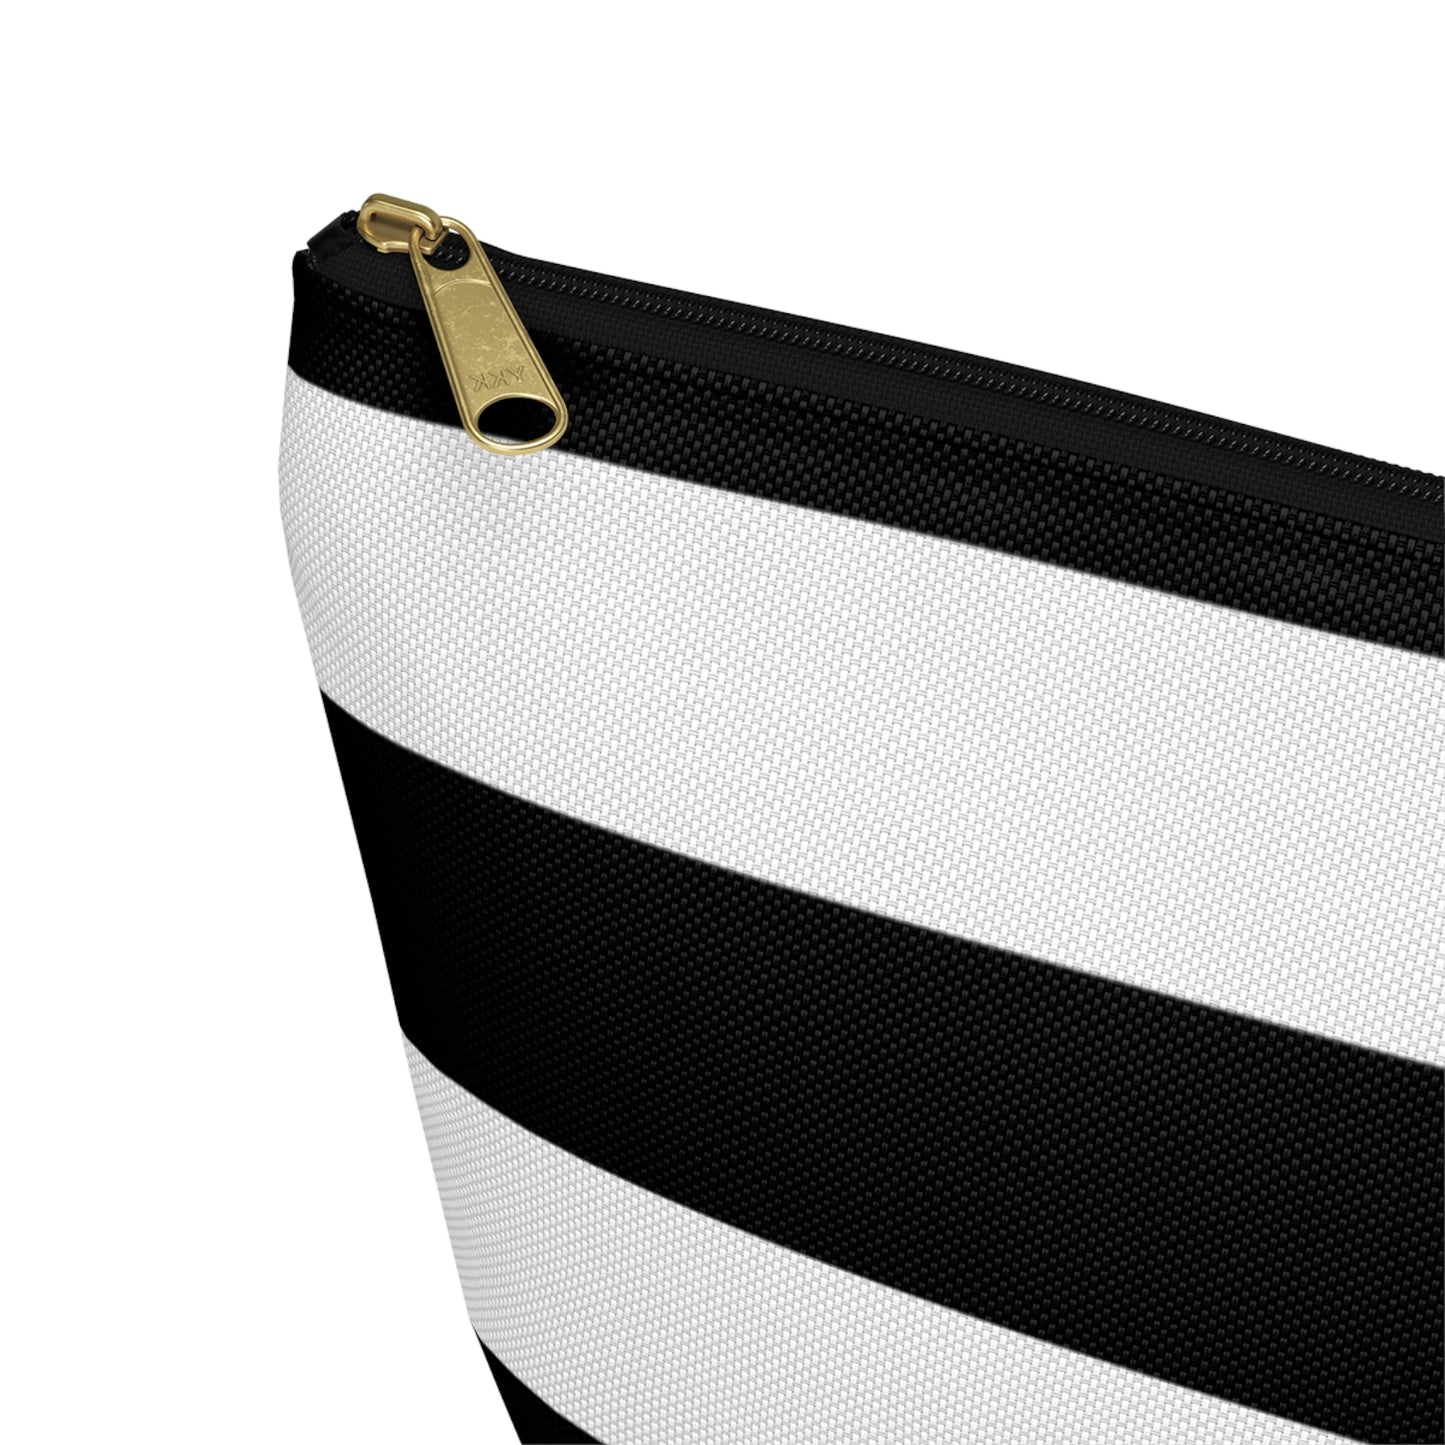 Big Bottom Zipper Pouch - Black/White Stripes